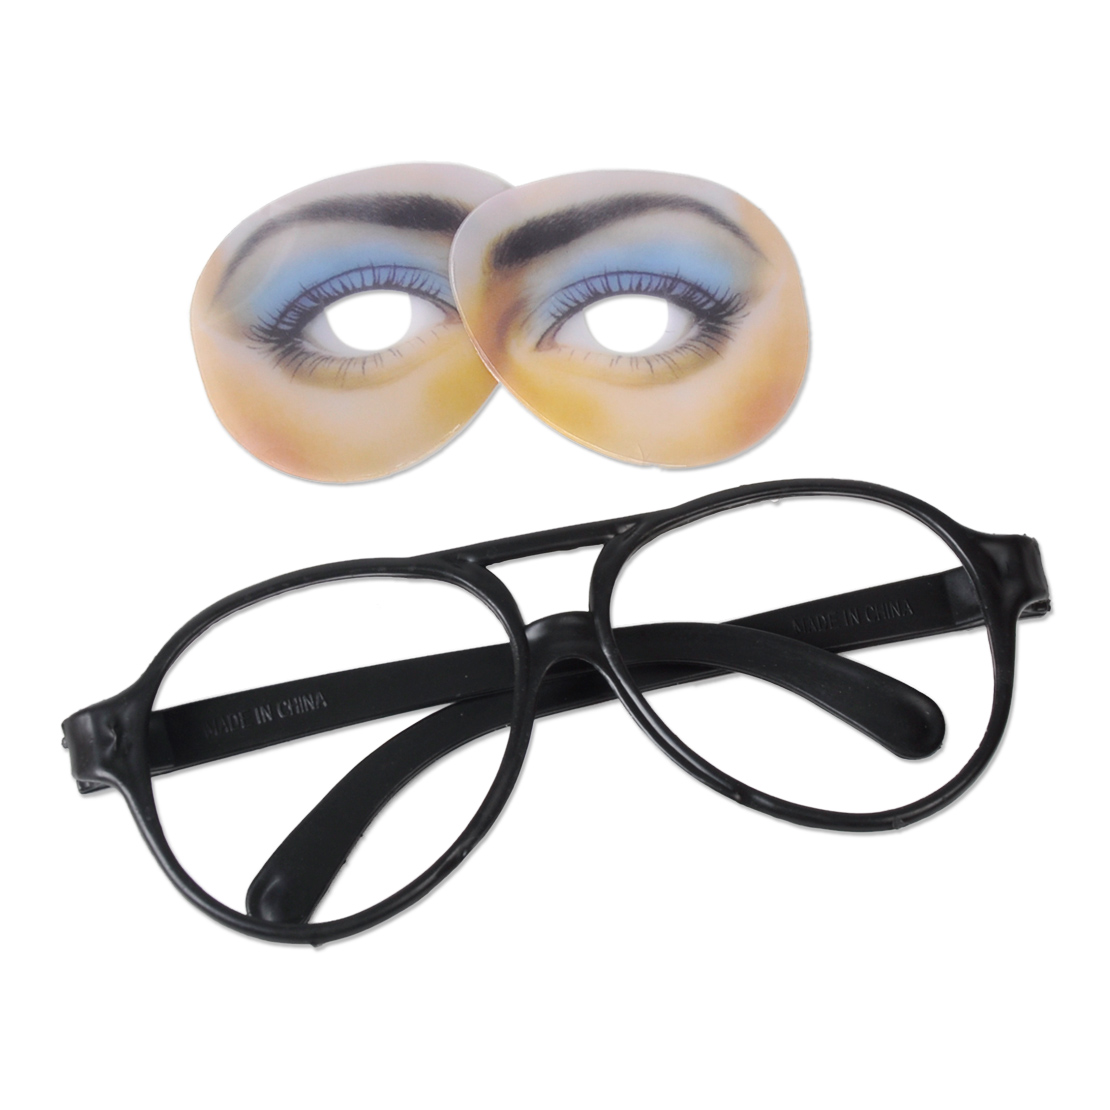 Unisex Funny Glasses Fake Novelty Gag Prank Eye Ball Joke Toy Halloween Party Ebay